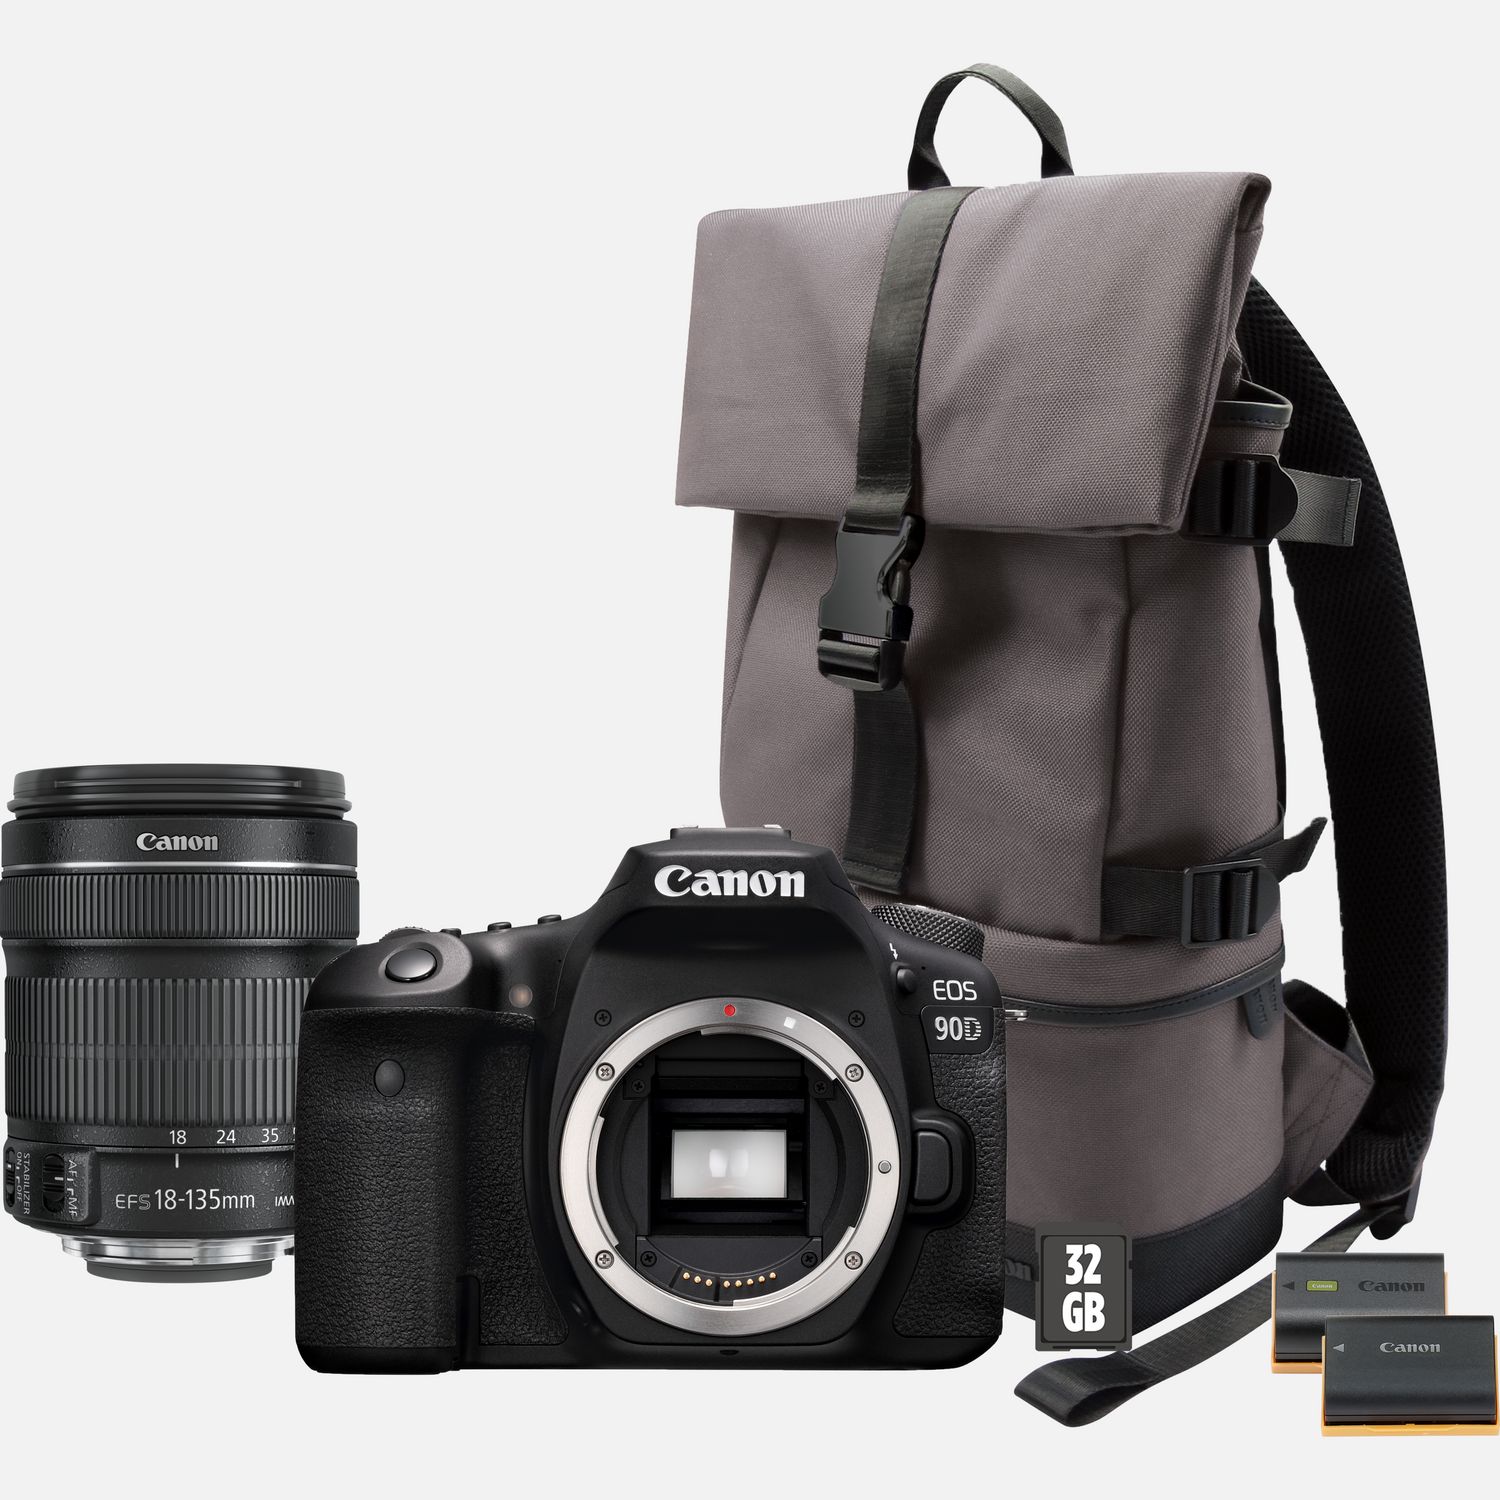 Image of Fotocamera Canon EOS 90D + Obiettivo EF-S 18-135mm IS USM + Zaino + Scheda SD + Batteria di ricambio